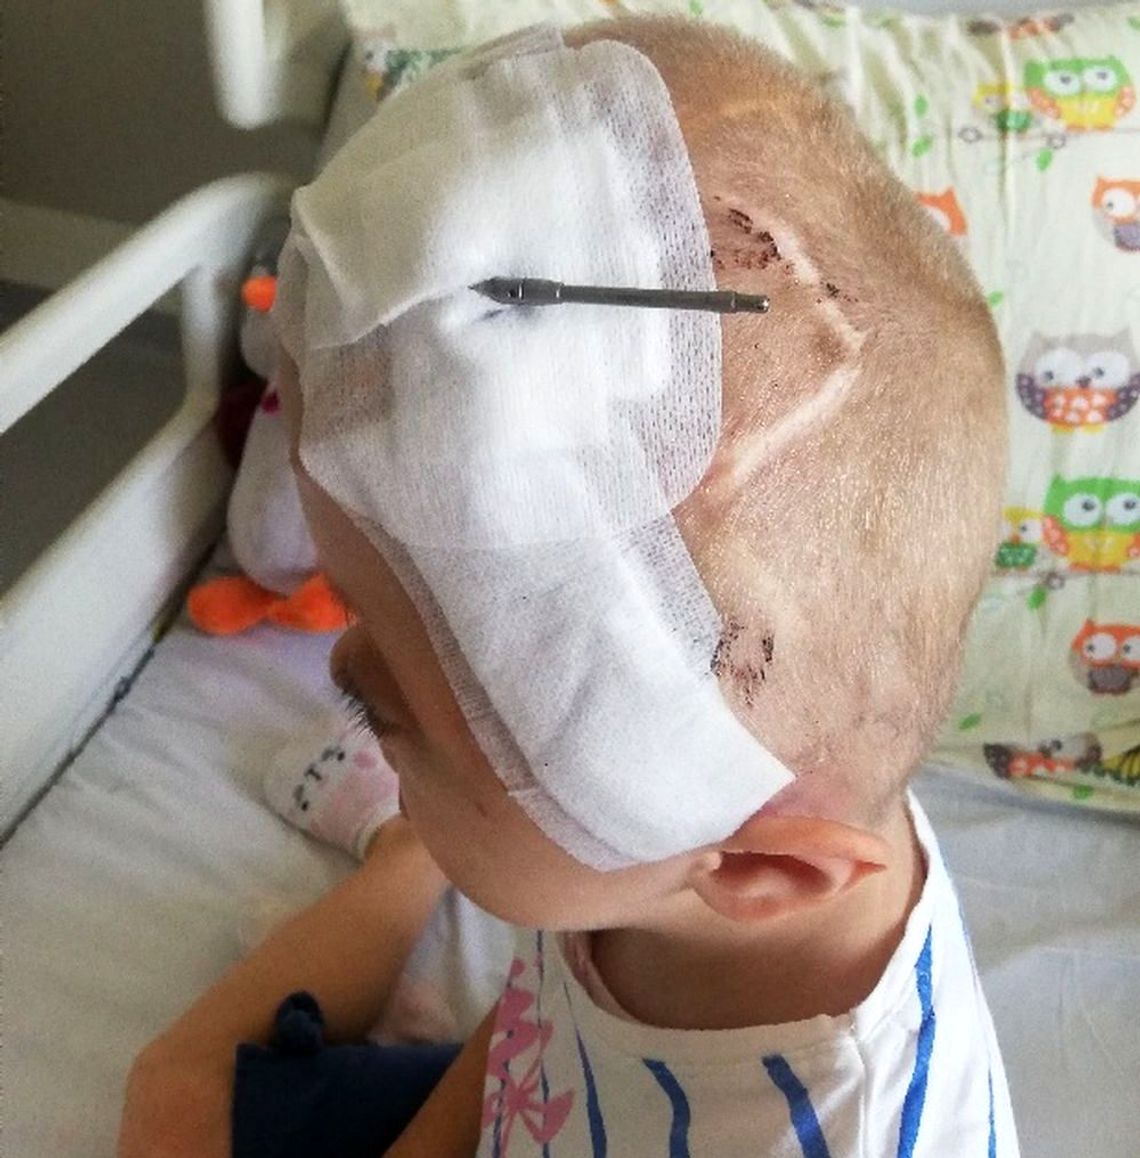 Unikalna operacja korekcji czaszki u 5-letniej Tosi. To pierwszy taki zabieg w Polsce